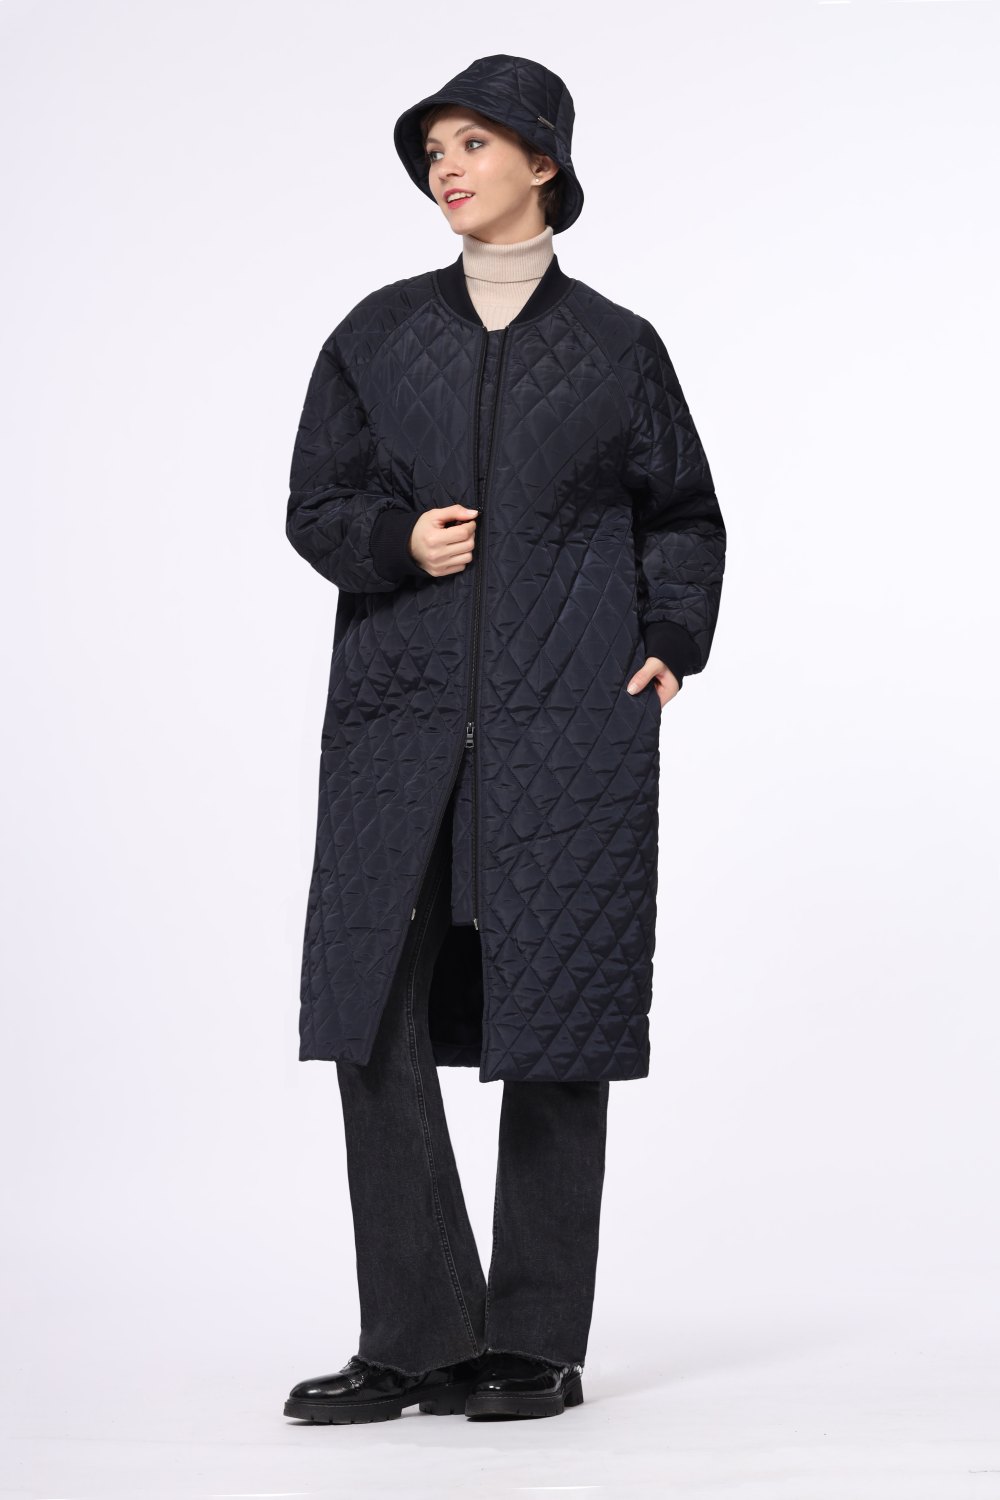 Пальто женское "Стеганое" модель 738 цвет: темно-синий